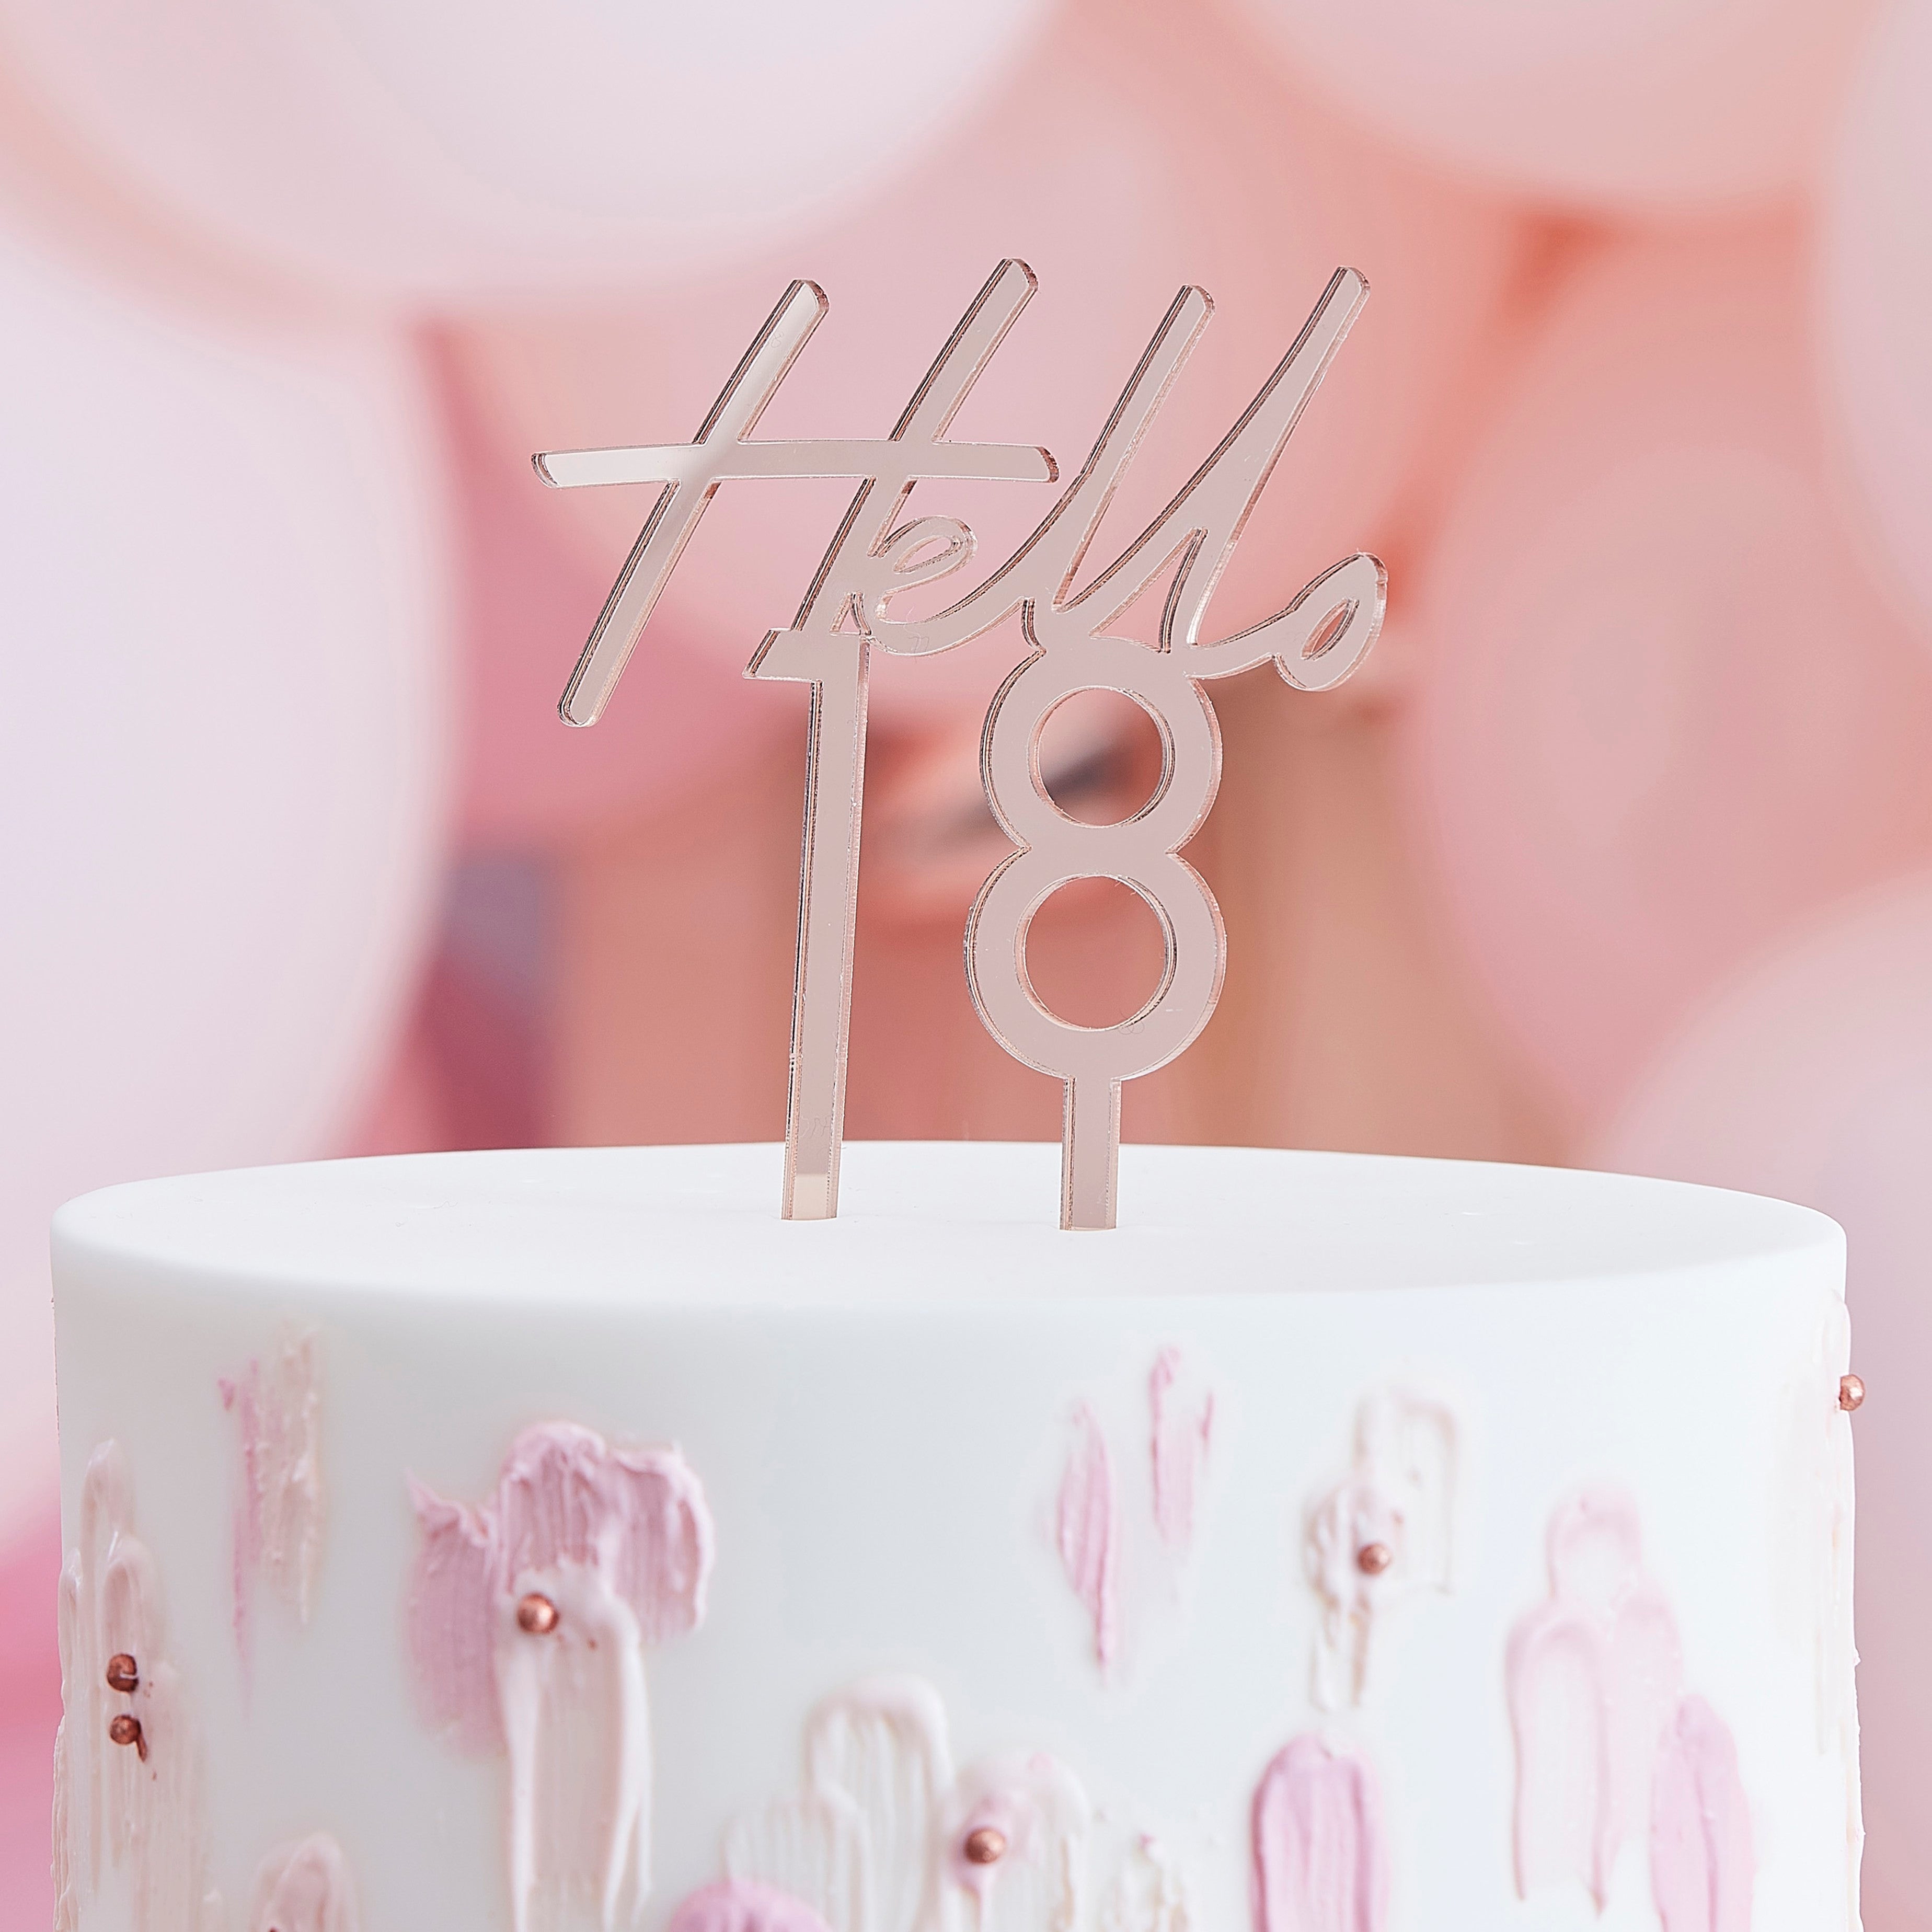 Pokrivač za tortu Ginger Ray - Hello 18, ružičasto zlato